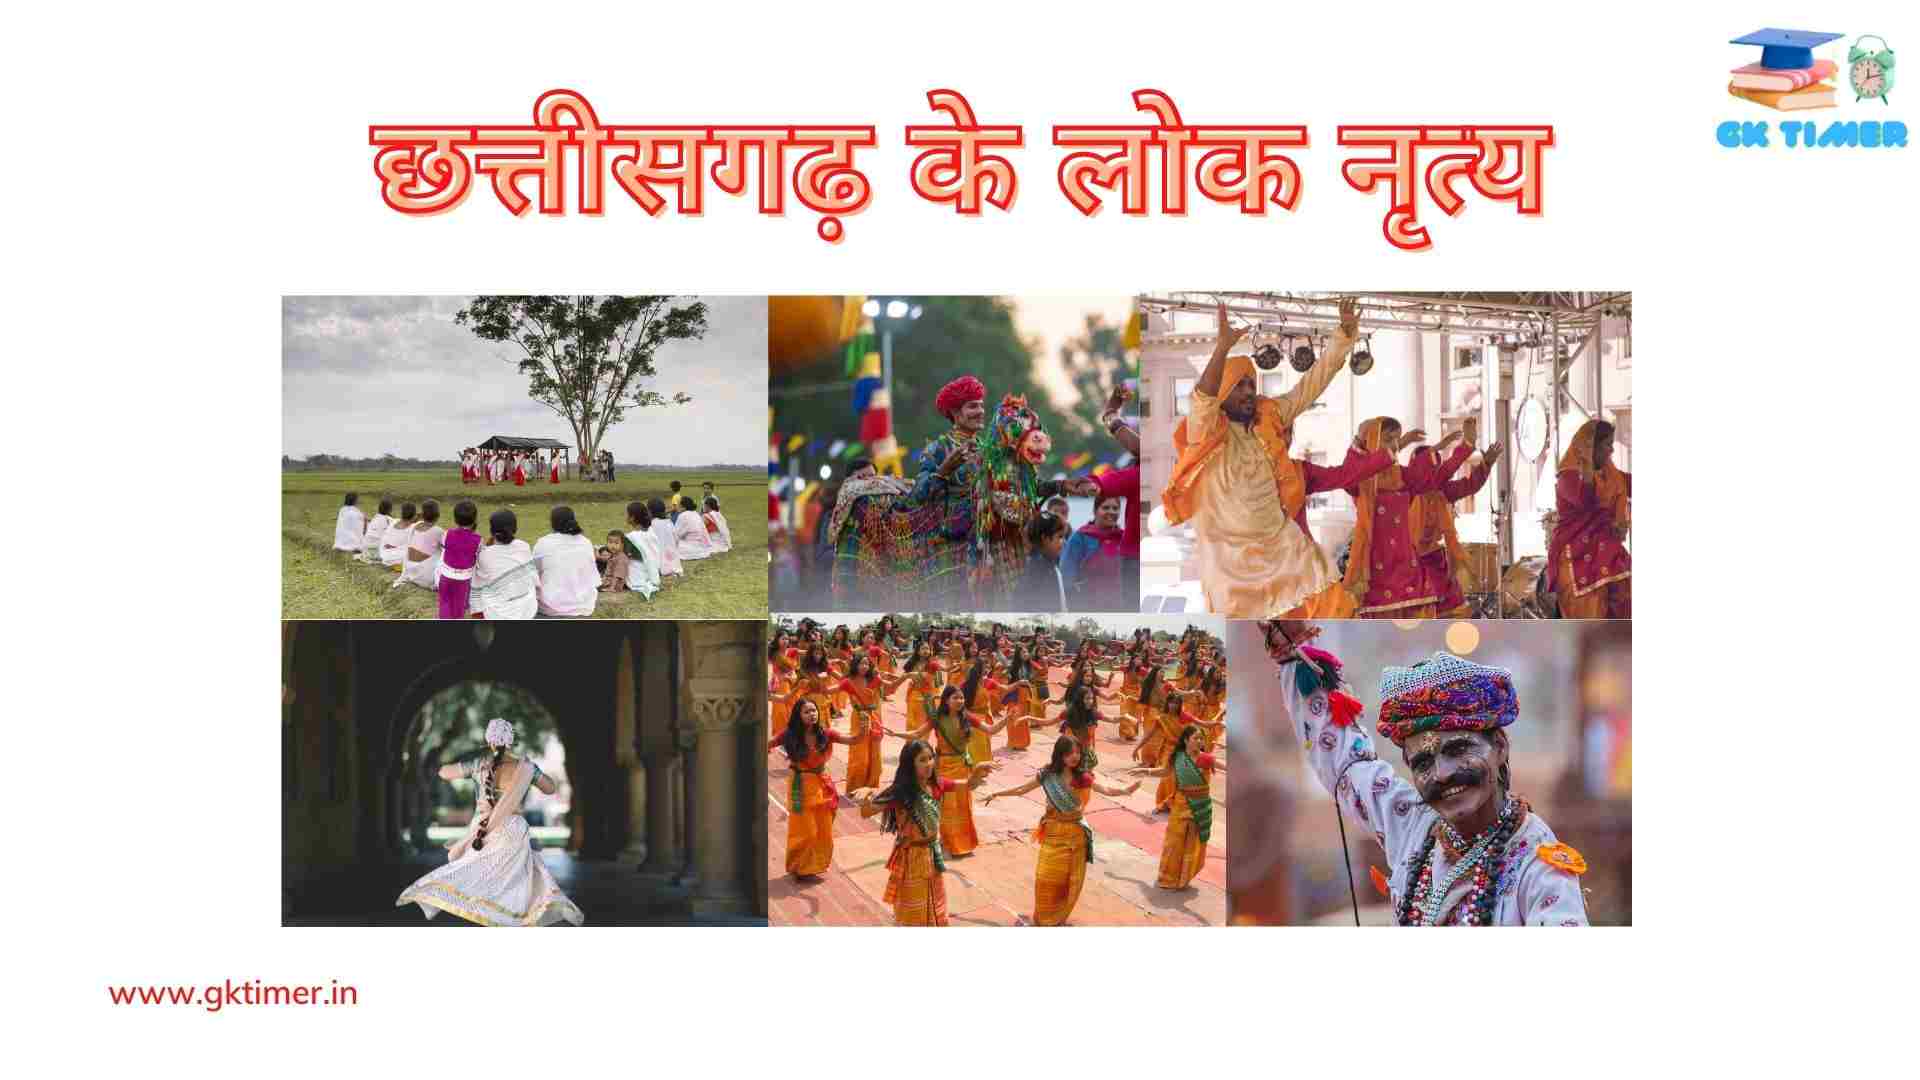 छत्तीसगढ़ के प्रमुख लोक नृत्य(सैला , पंथी, राउत नाचा) | Traditional folk dances of Chhattisgarh in Hindi